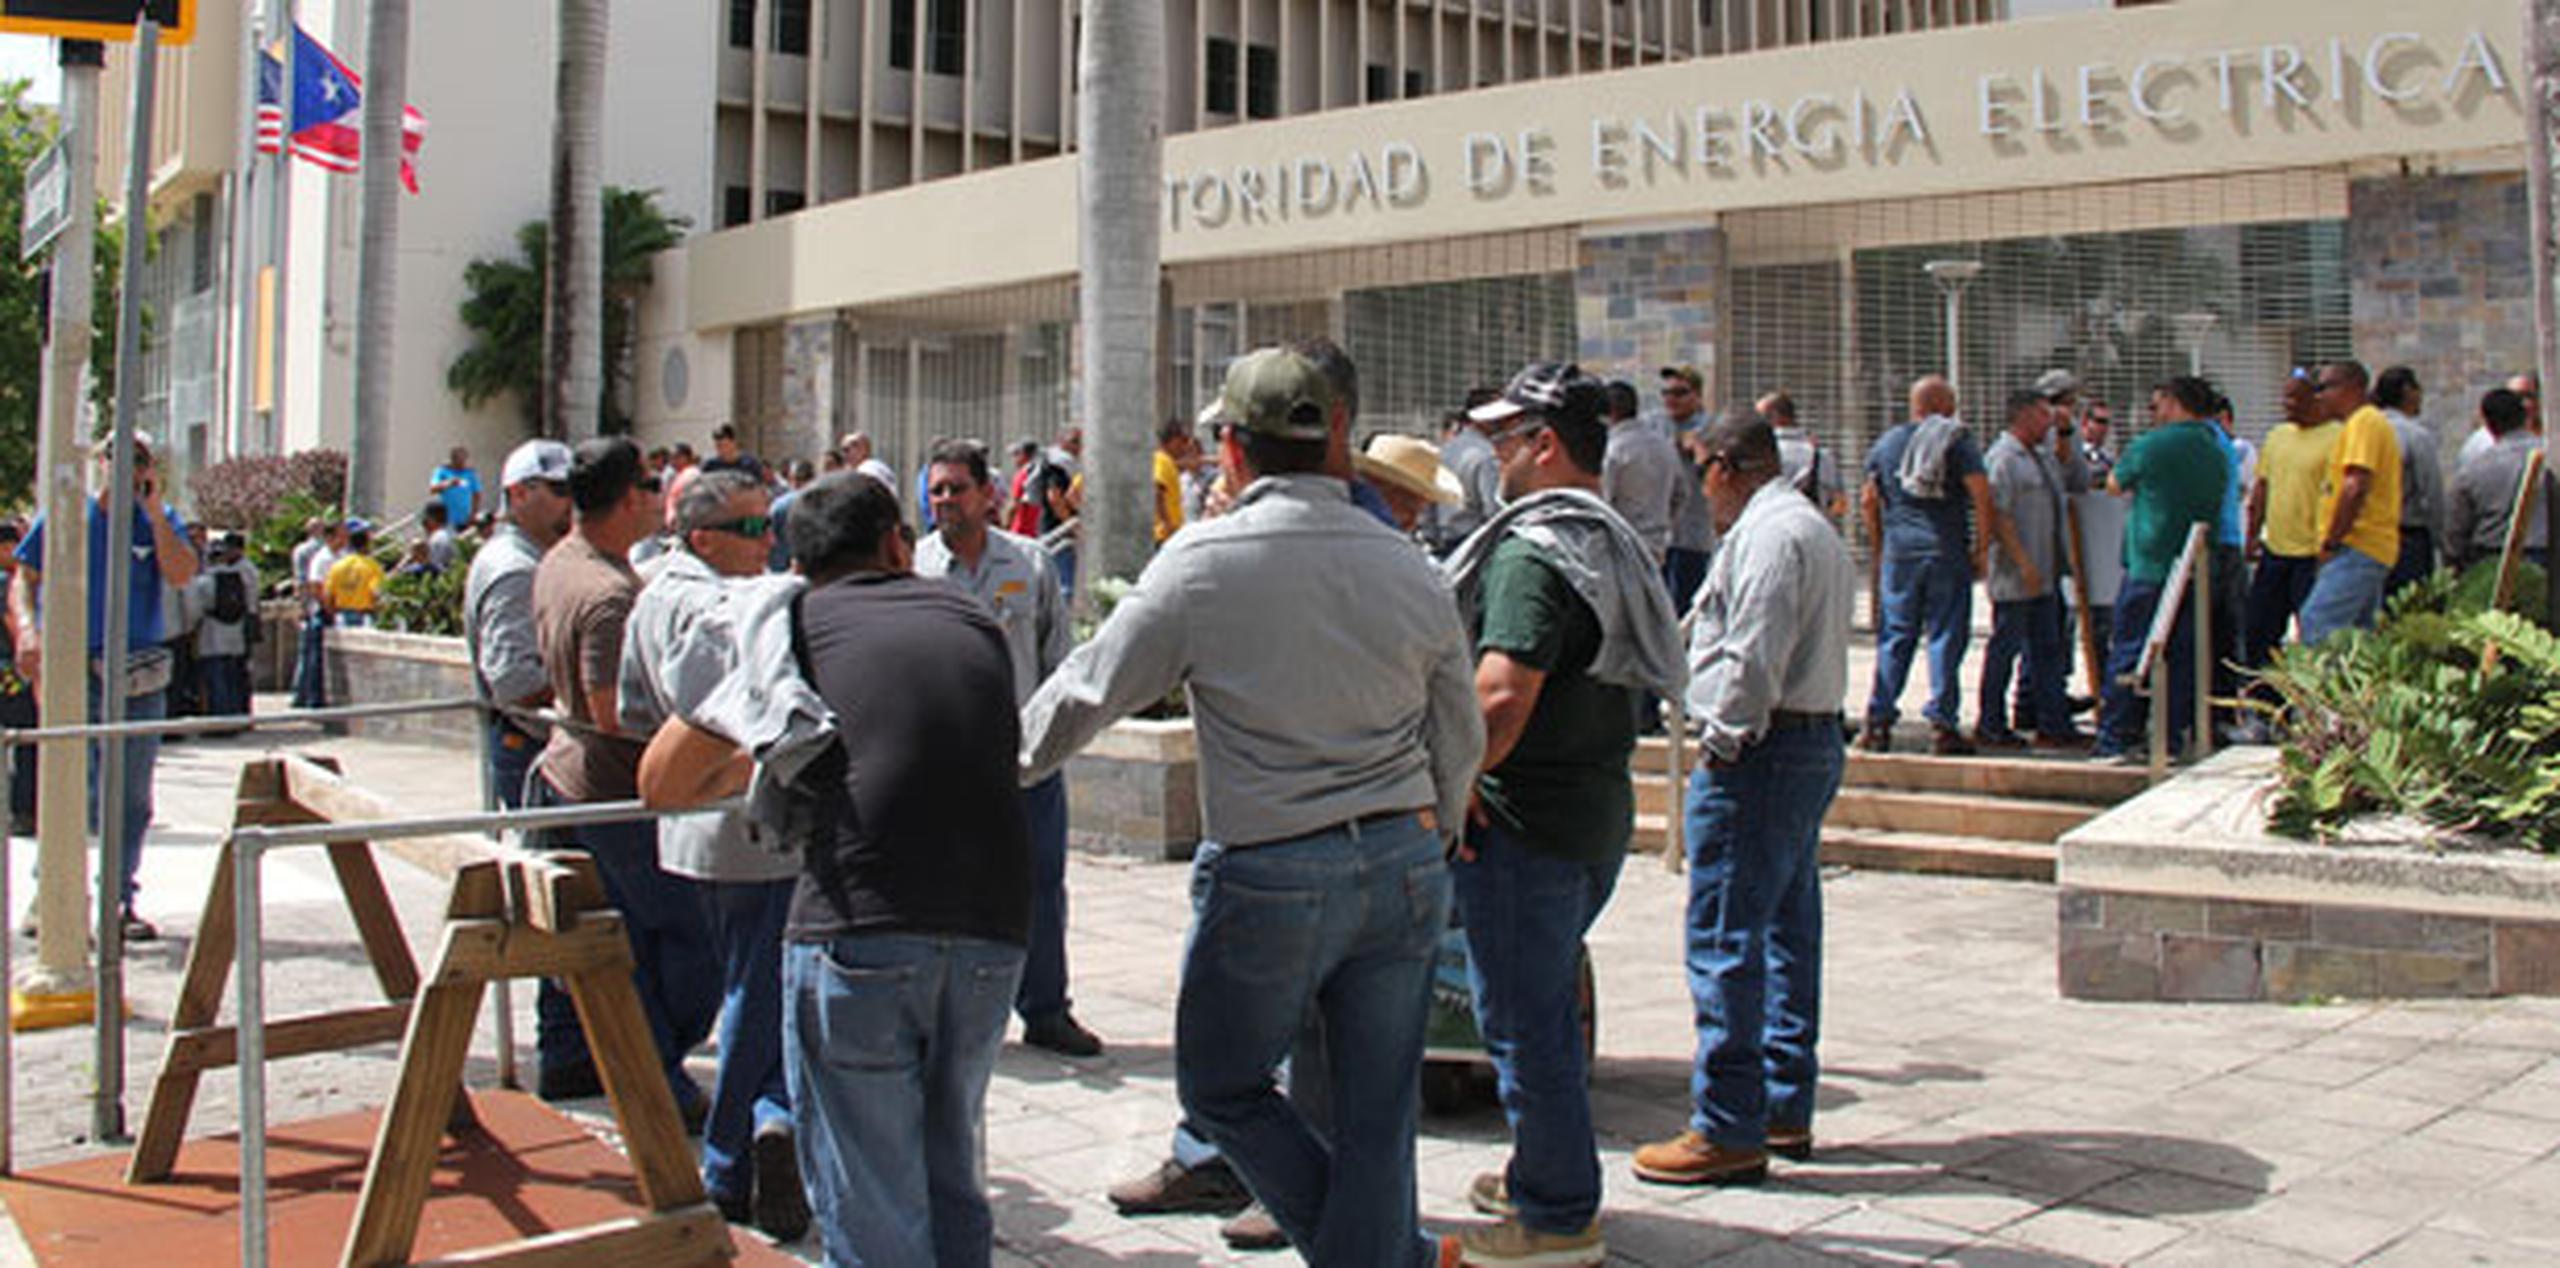 La mala constitución de brigadas ha provocado accidentes fatales en el área de trabajo de los celadores. (alex.figueroa@gfrmedia.com)